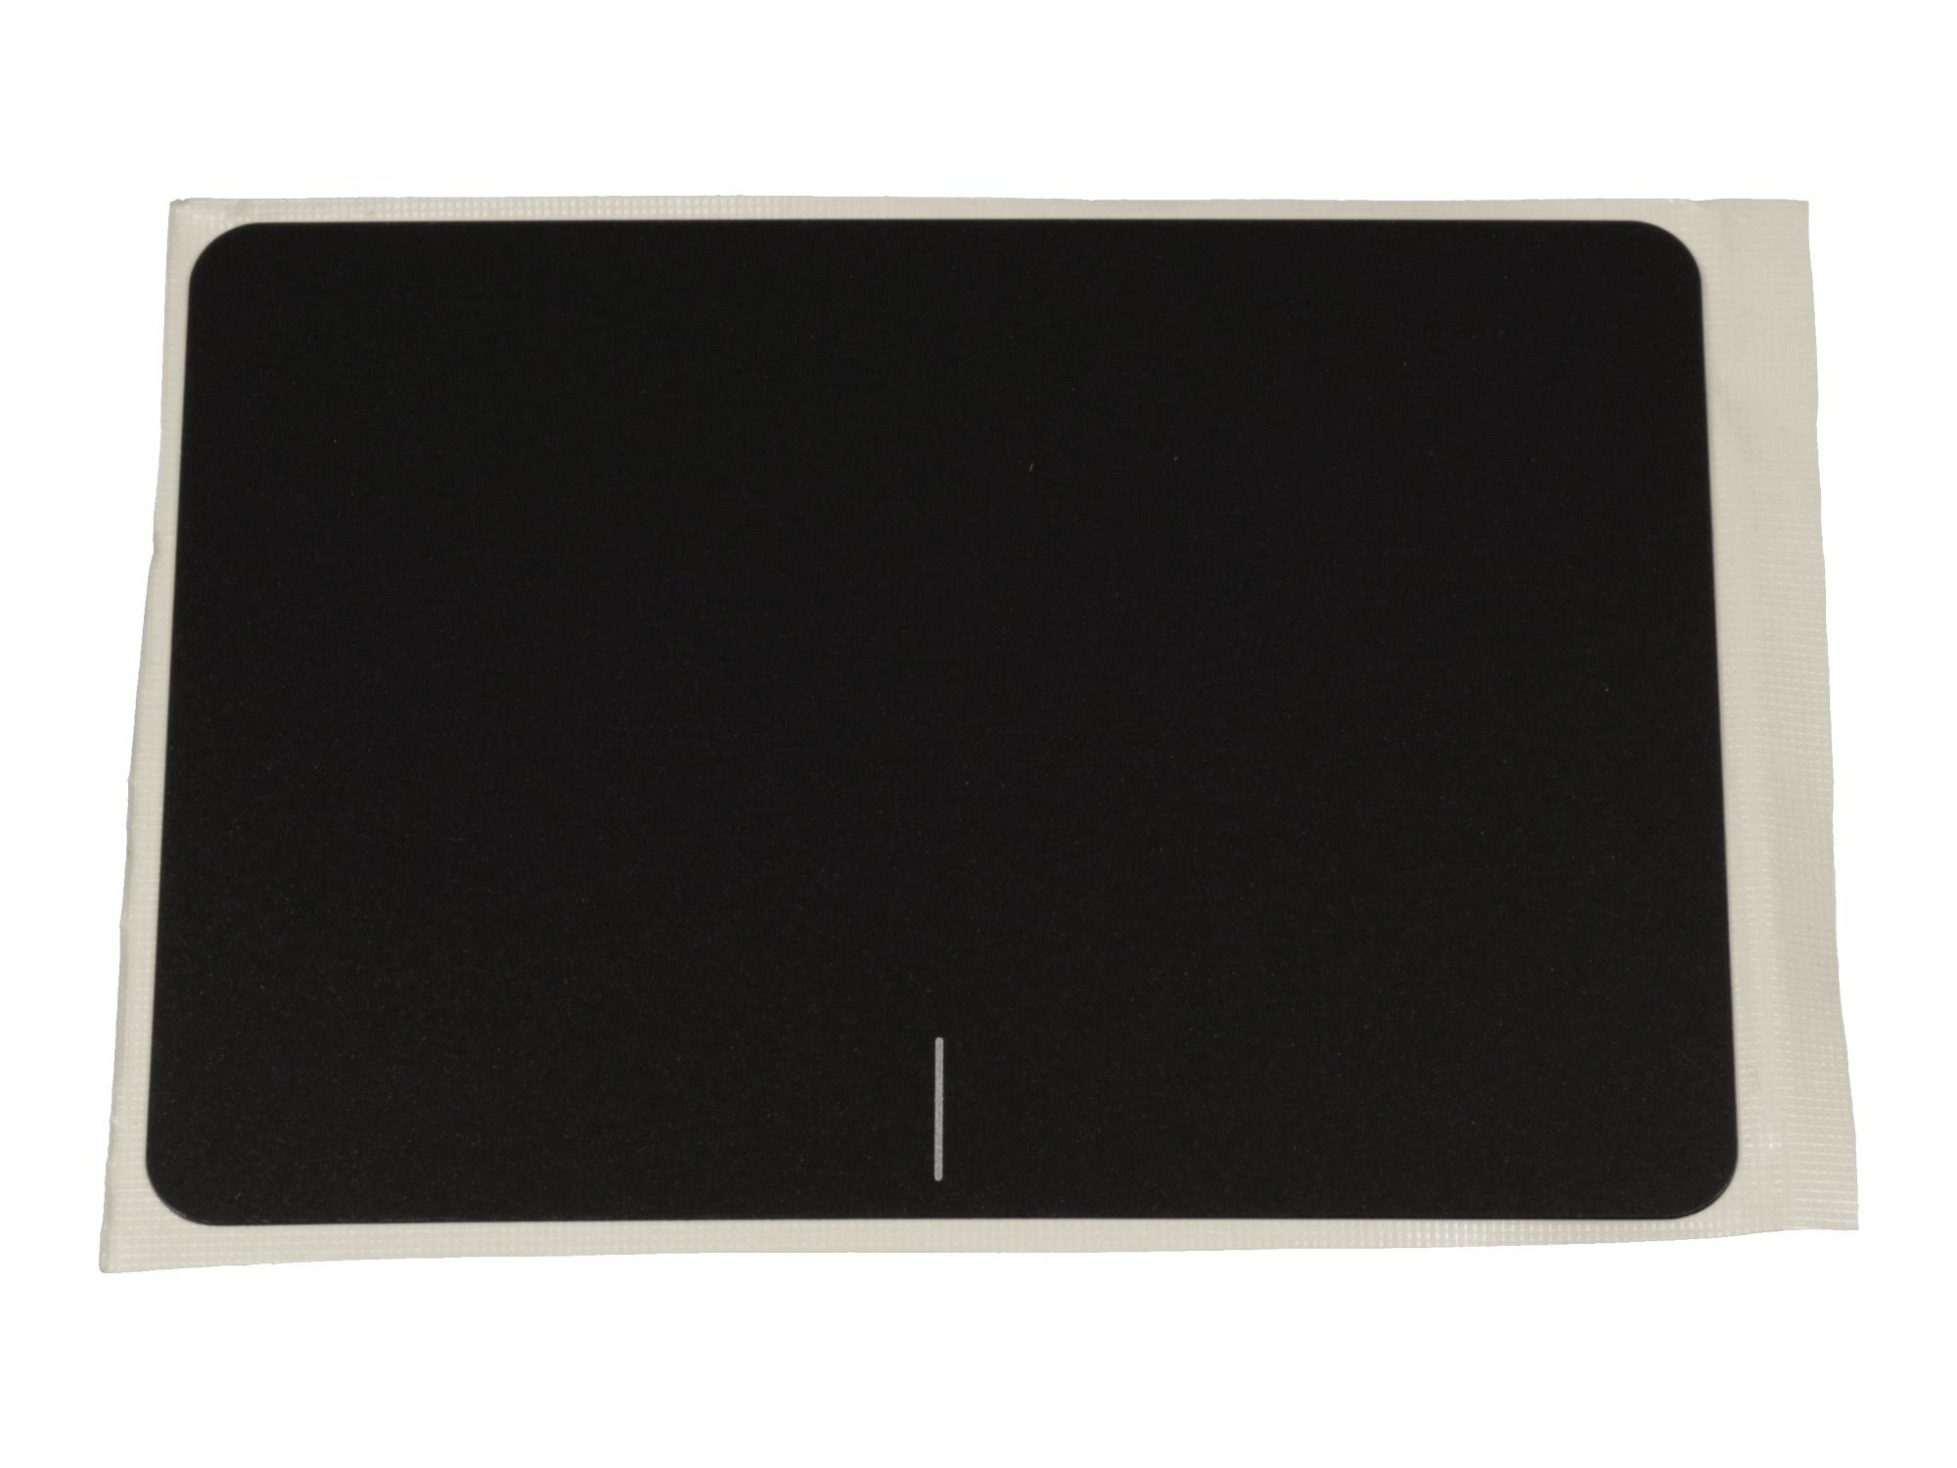 Touchpad Abdeckung schwarz für Asus F556UA